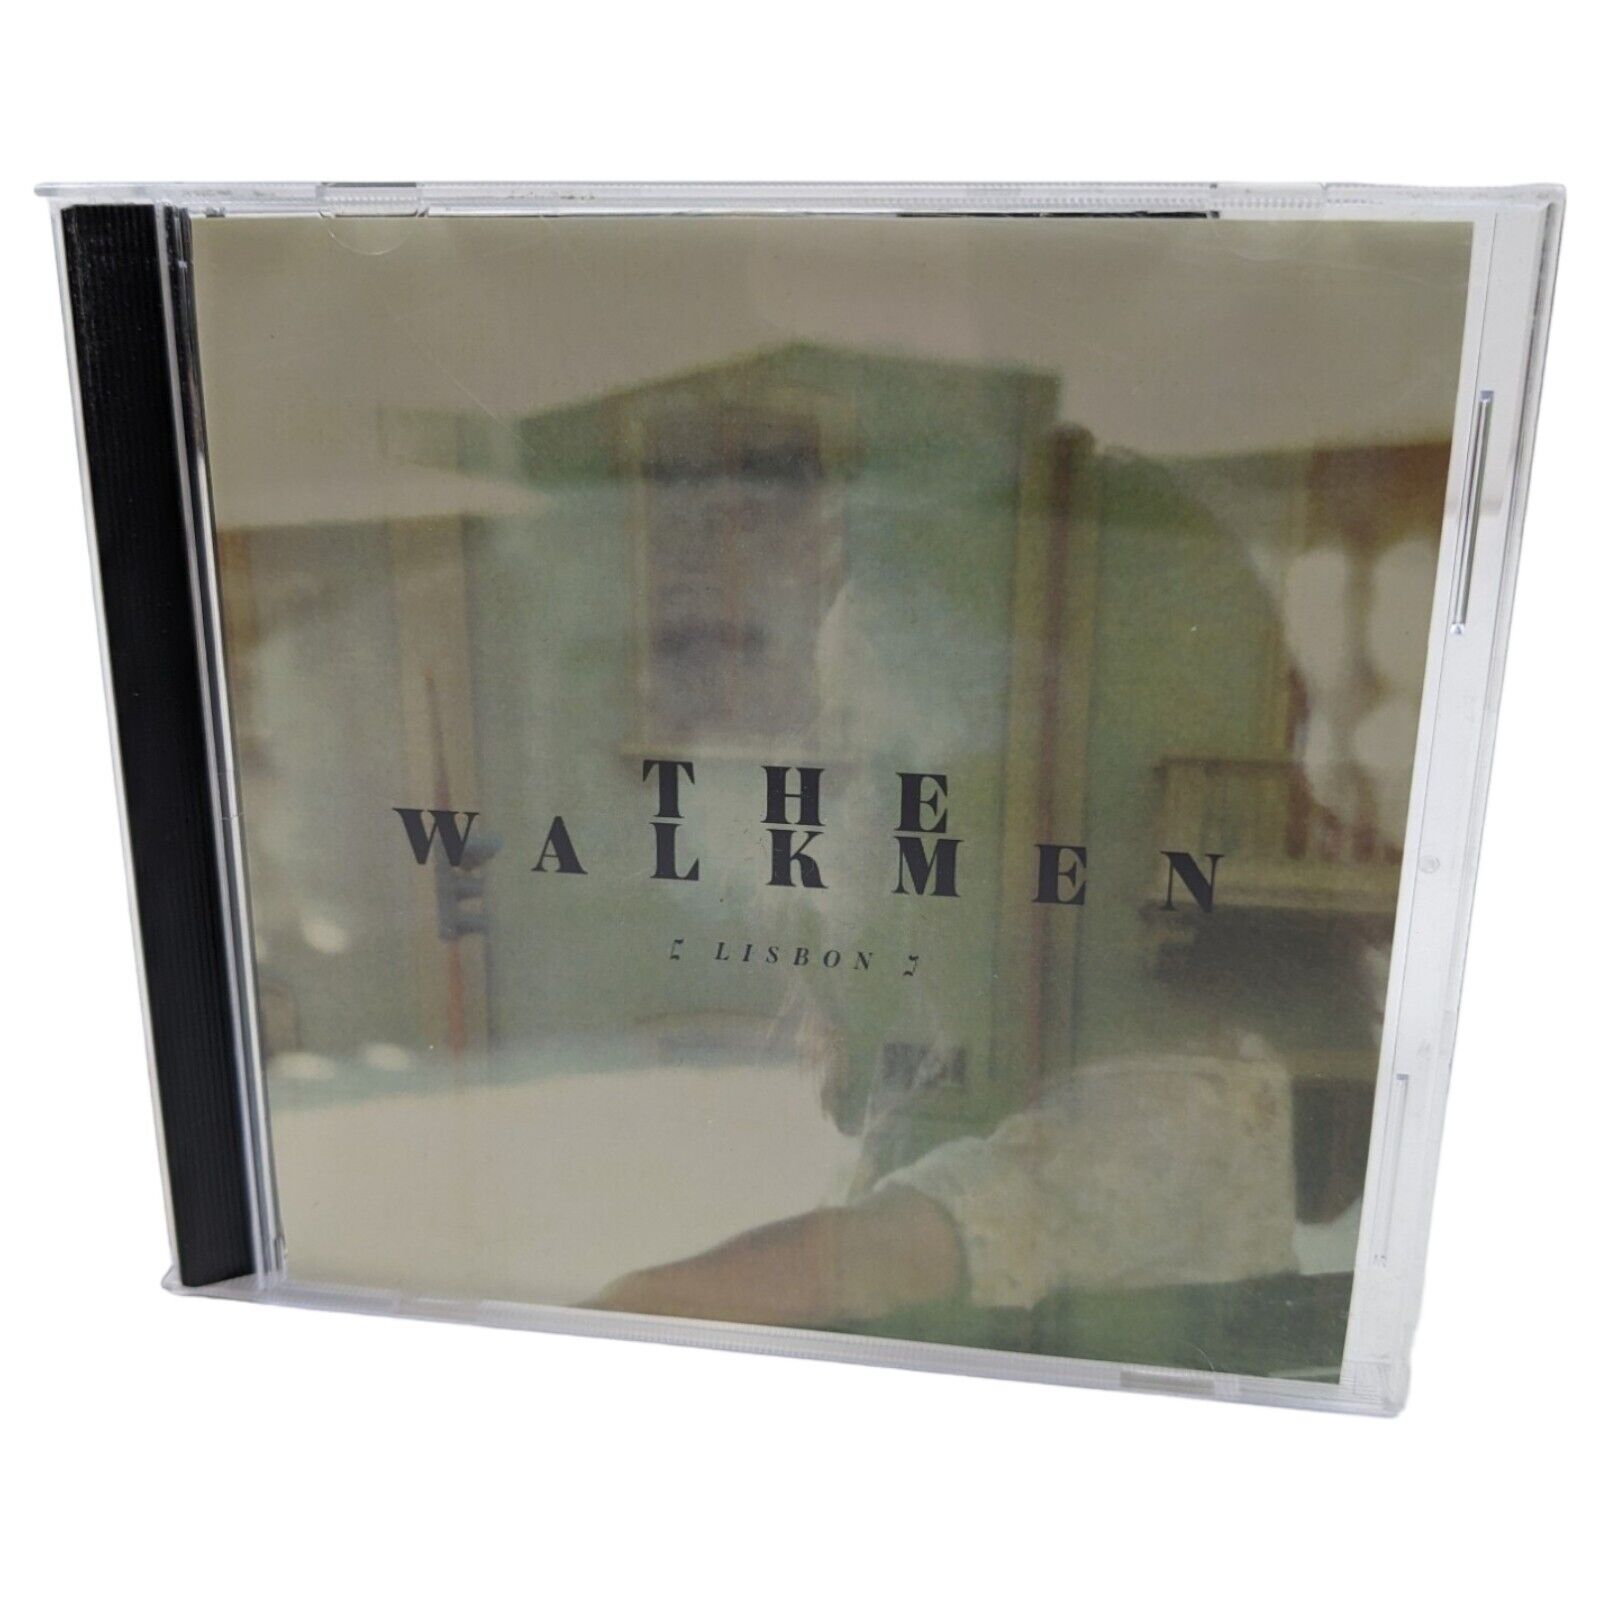 The Walkmen - Lisbon (CDr, 2010) RARE Promo